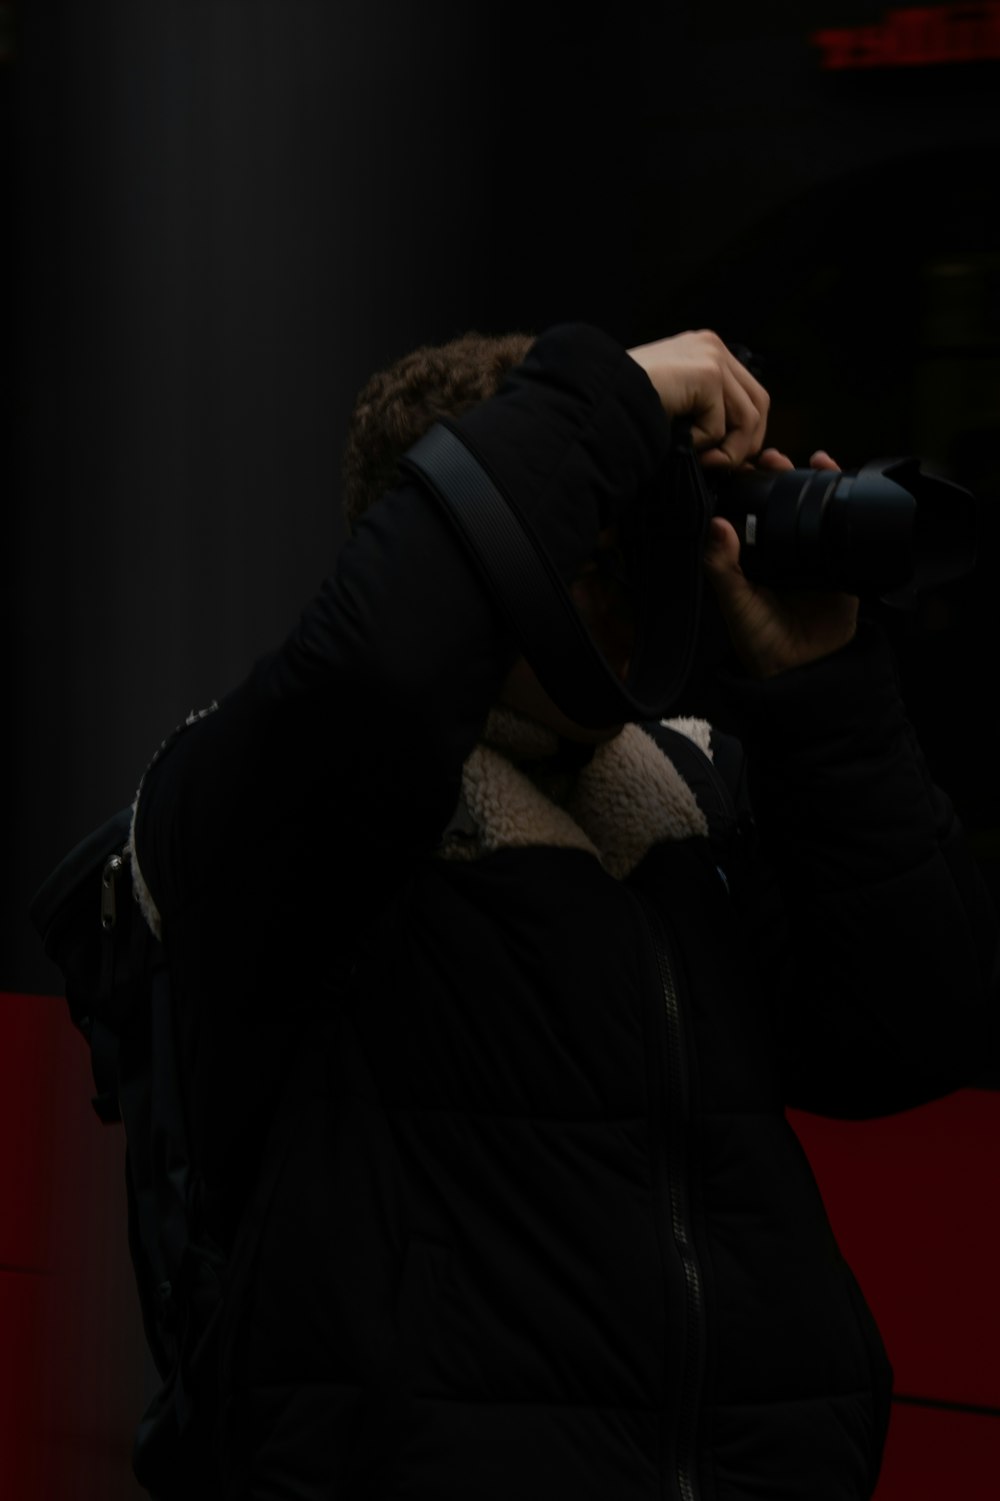 Mann in schwarzer Jacke mit schwarzer DSLR-Kamera